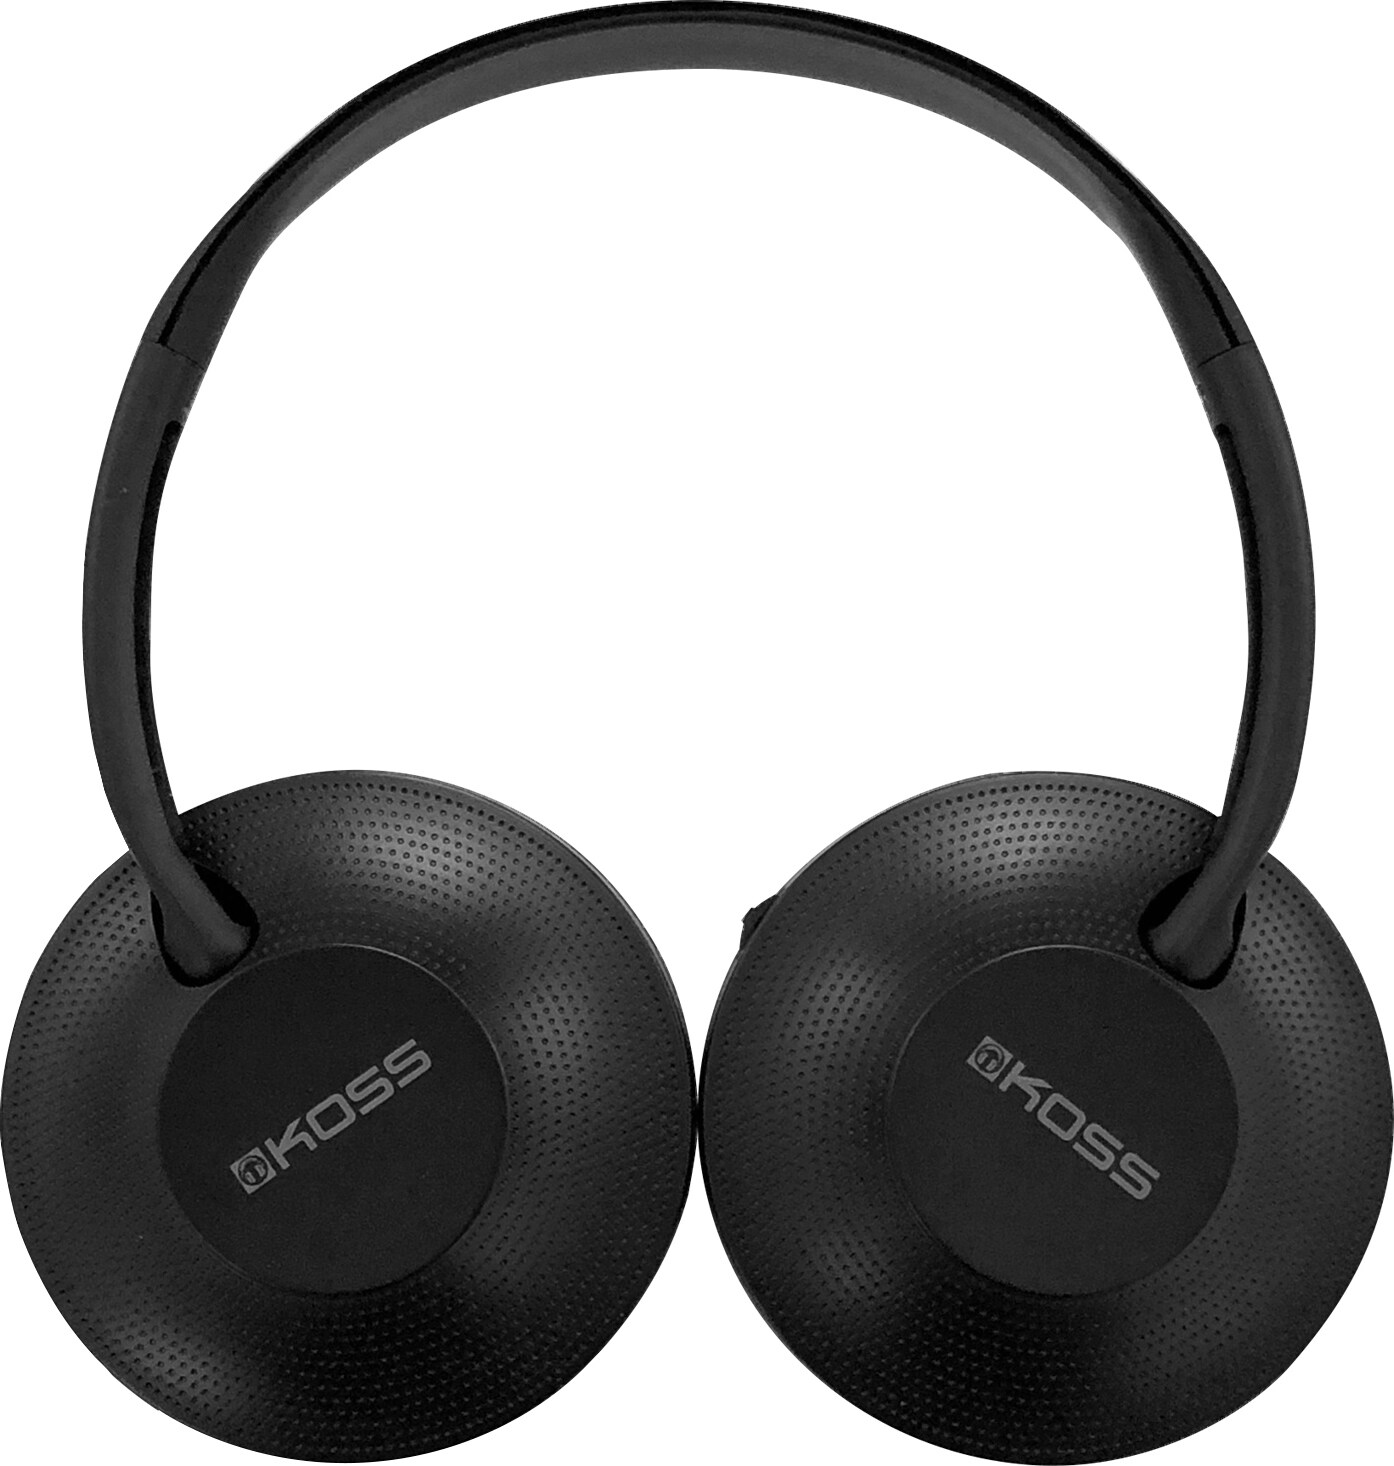 Koss KPH7 trådløse on-ear hodetelefoner (sort) - Hodetelefoner - Elkjøp